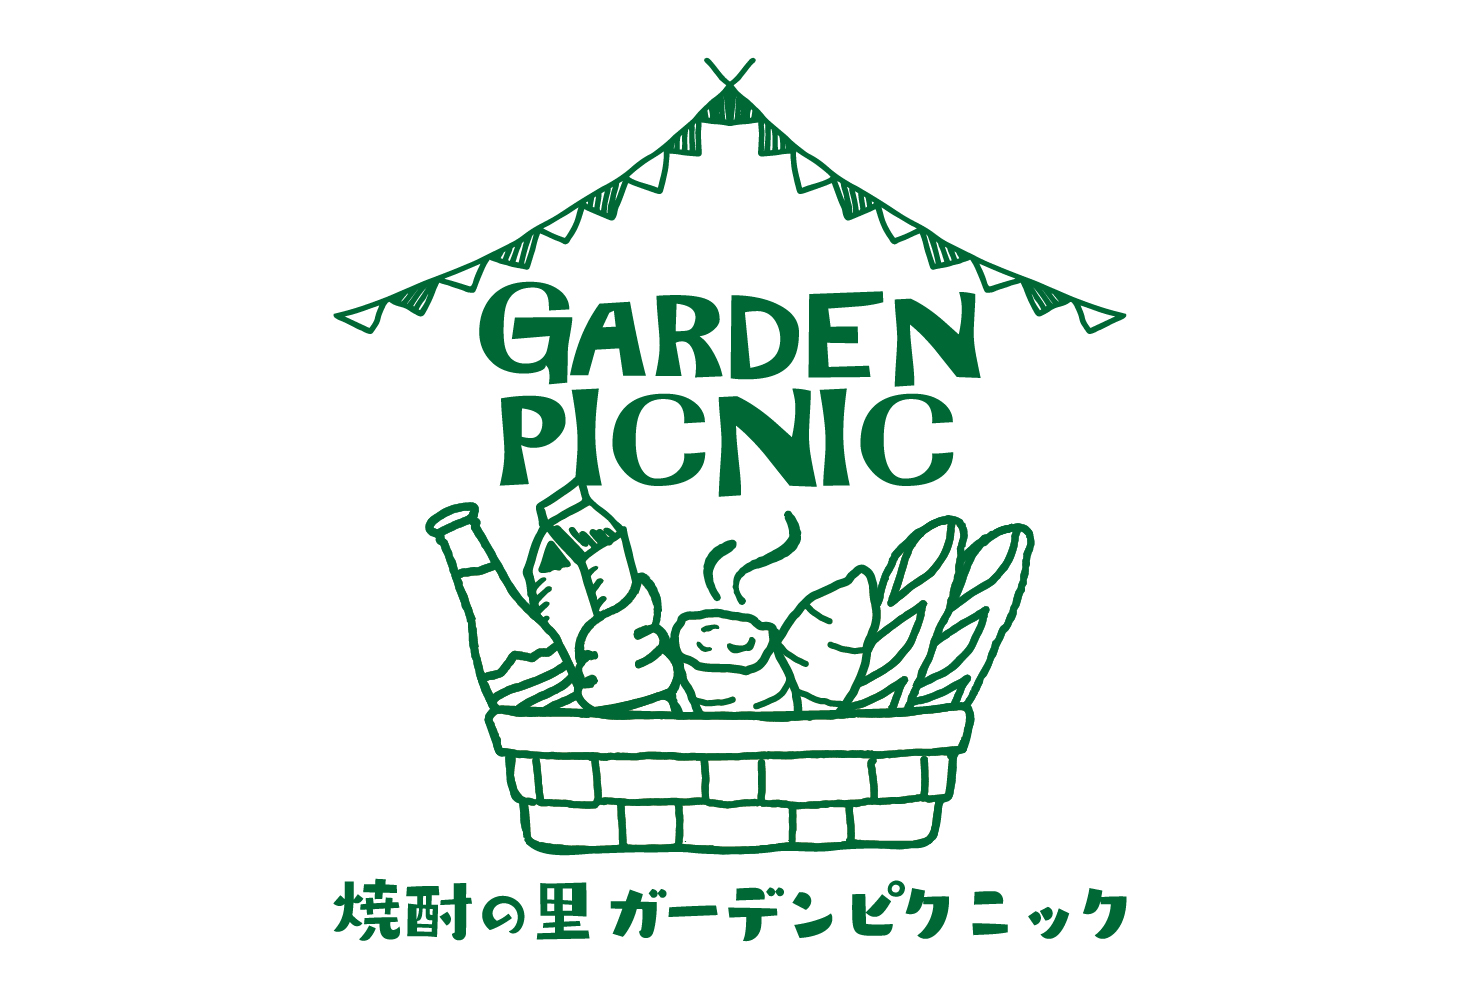 「焼酎の里 ガーデンピクニック」開催のお知らせ【第1弾】中止